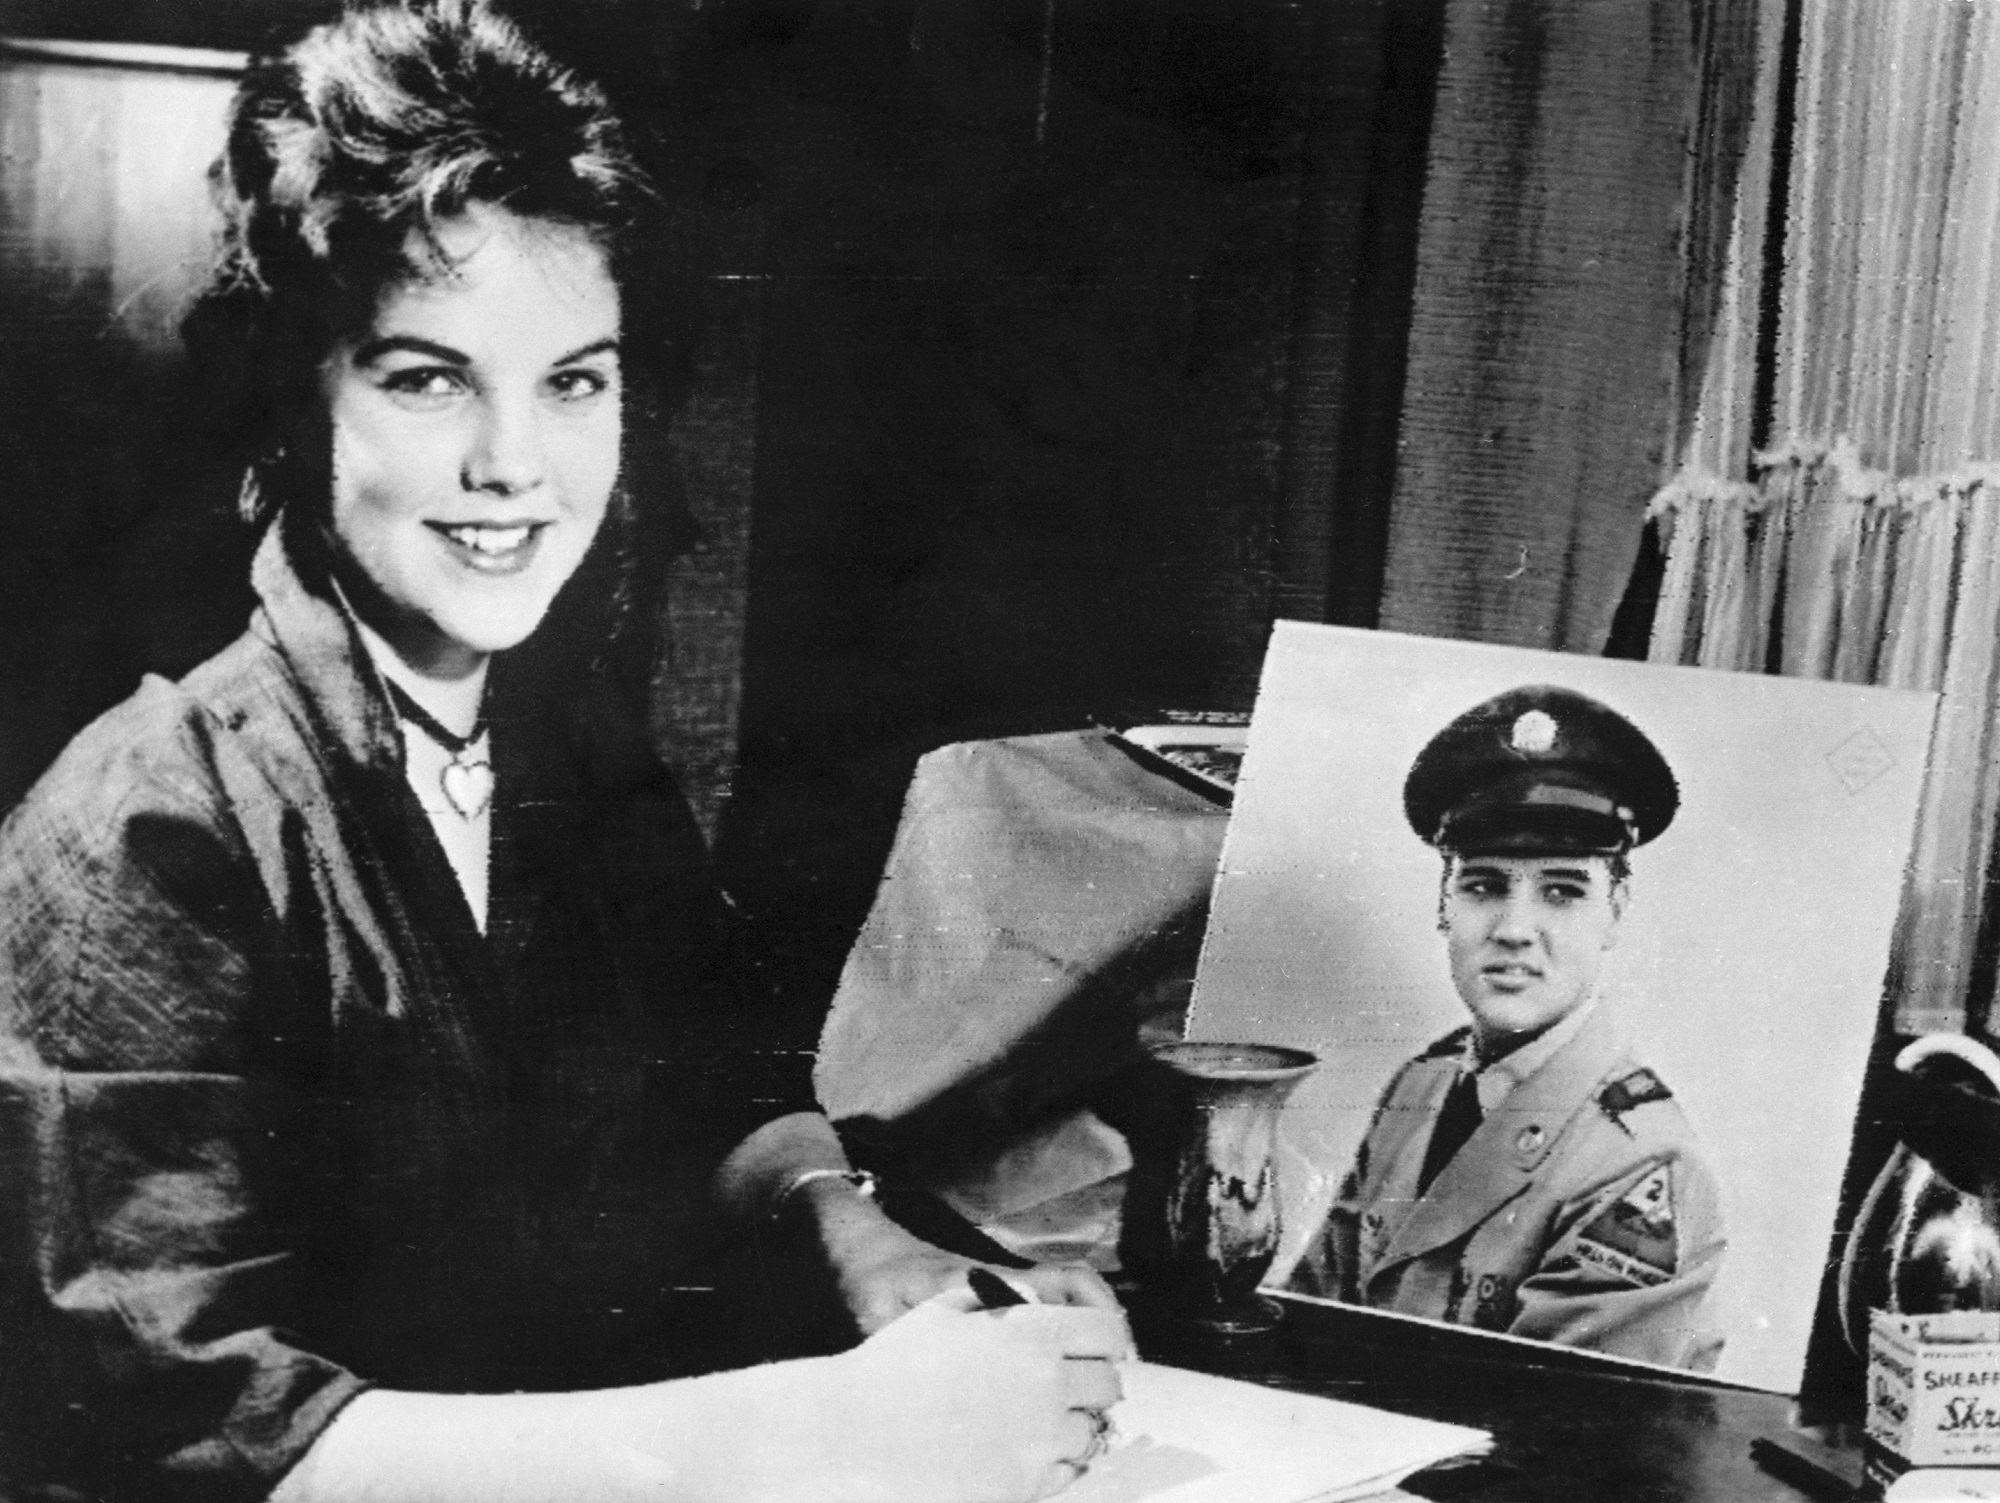 Priscilla Presley with and Elvis Presley photo